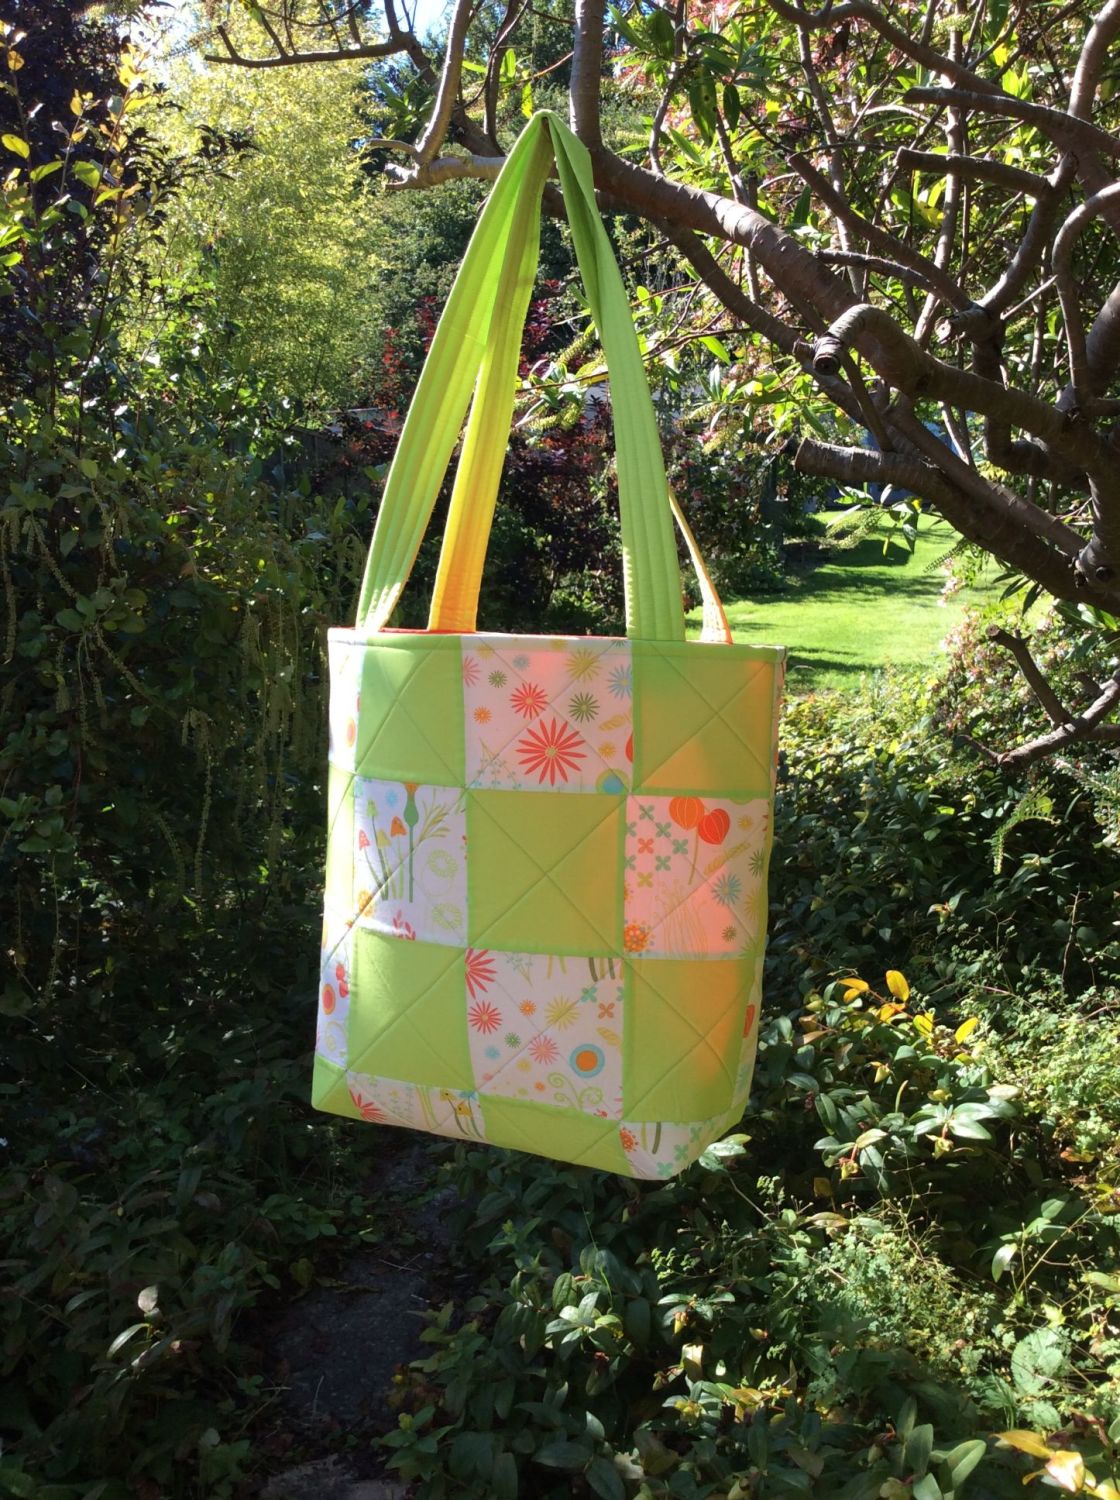 Helen's Garden, Enchanted Tote Bag